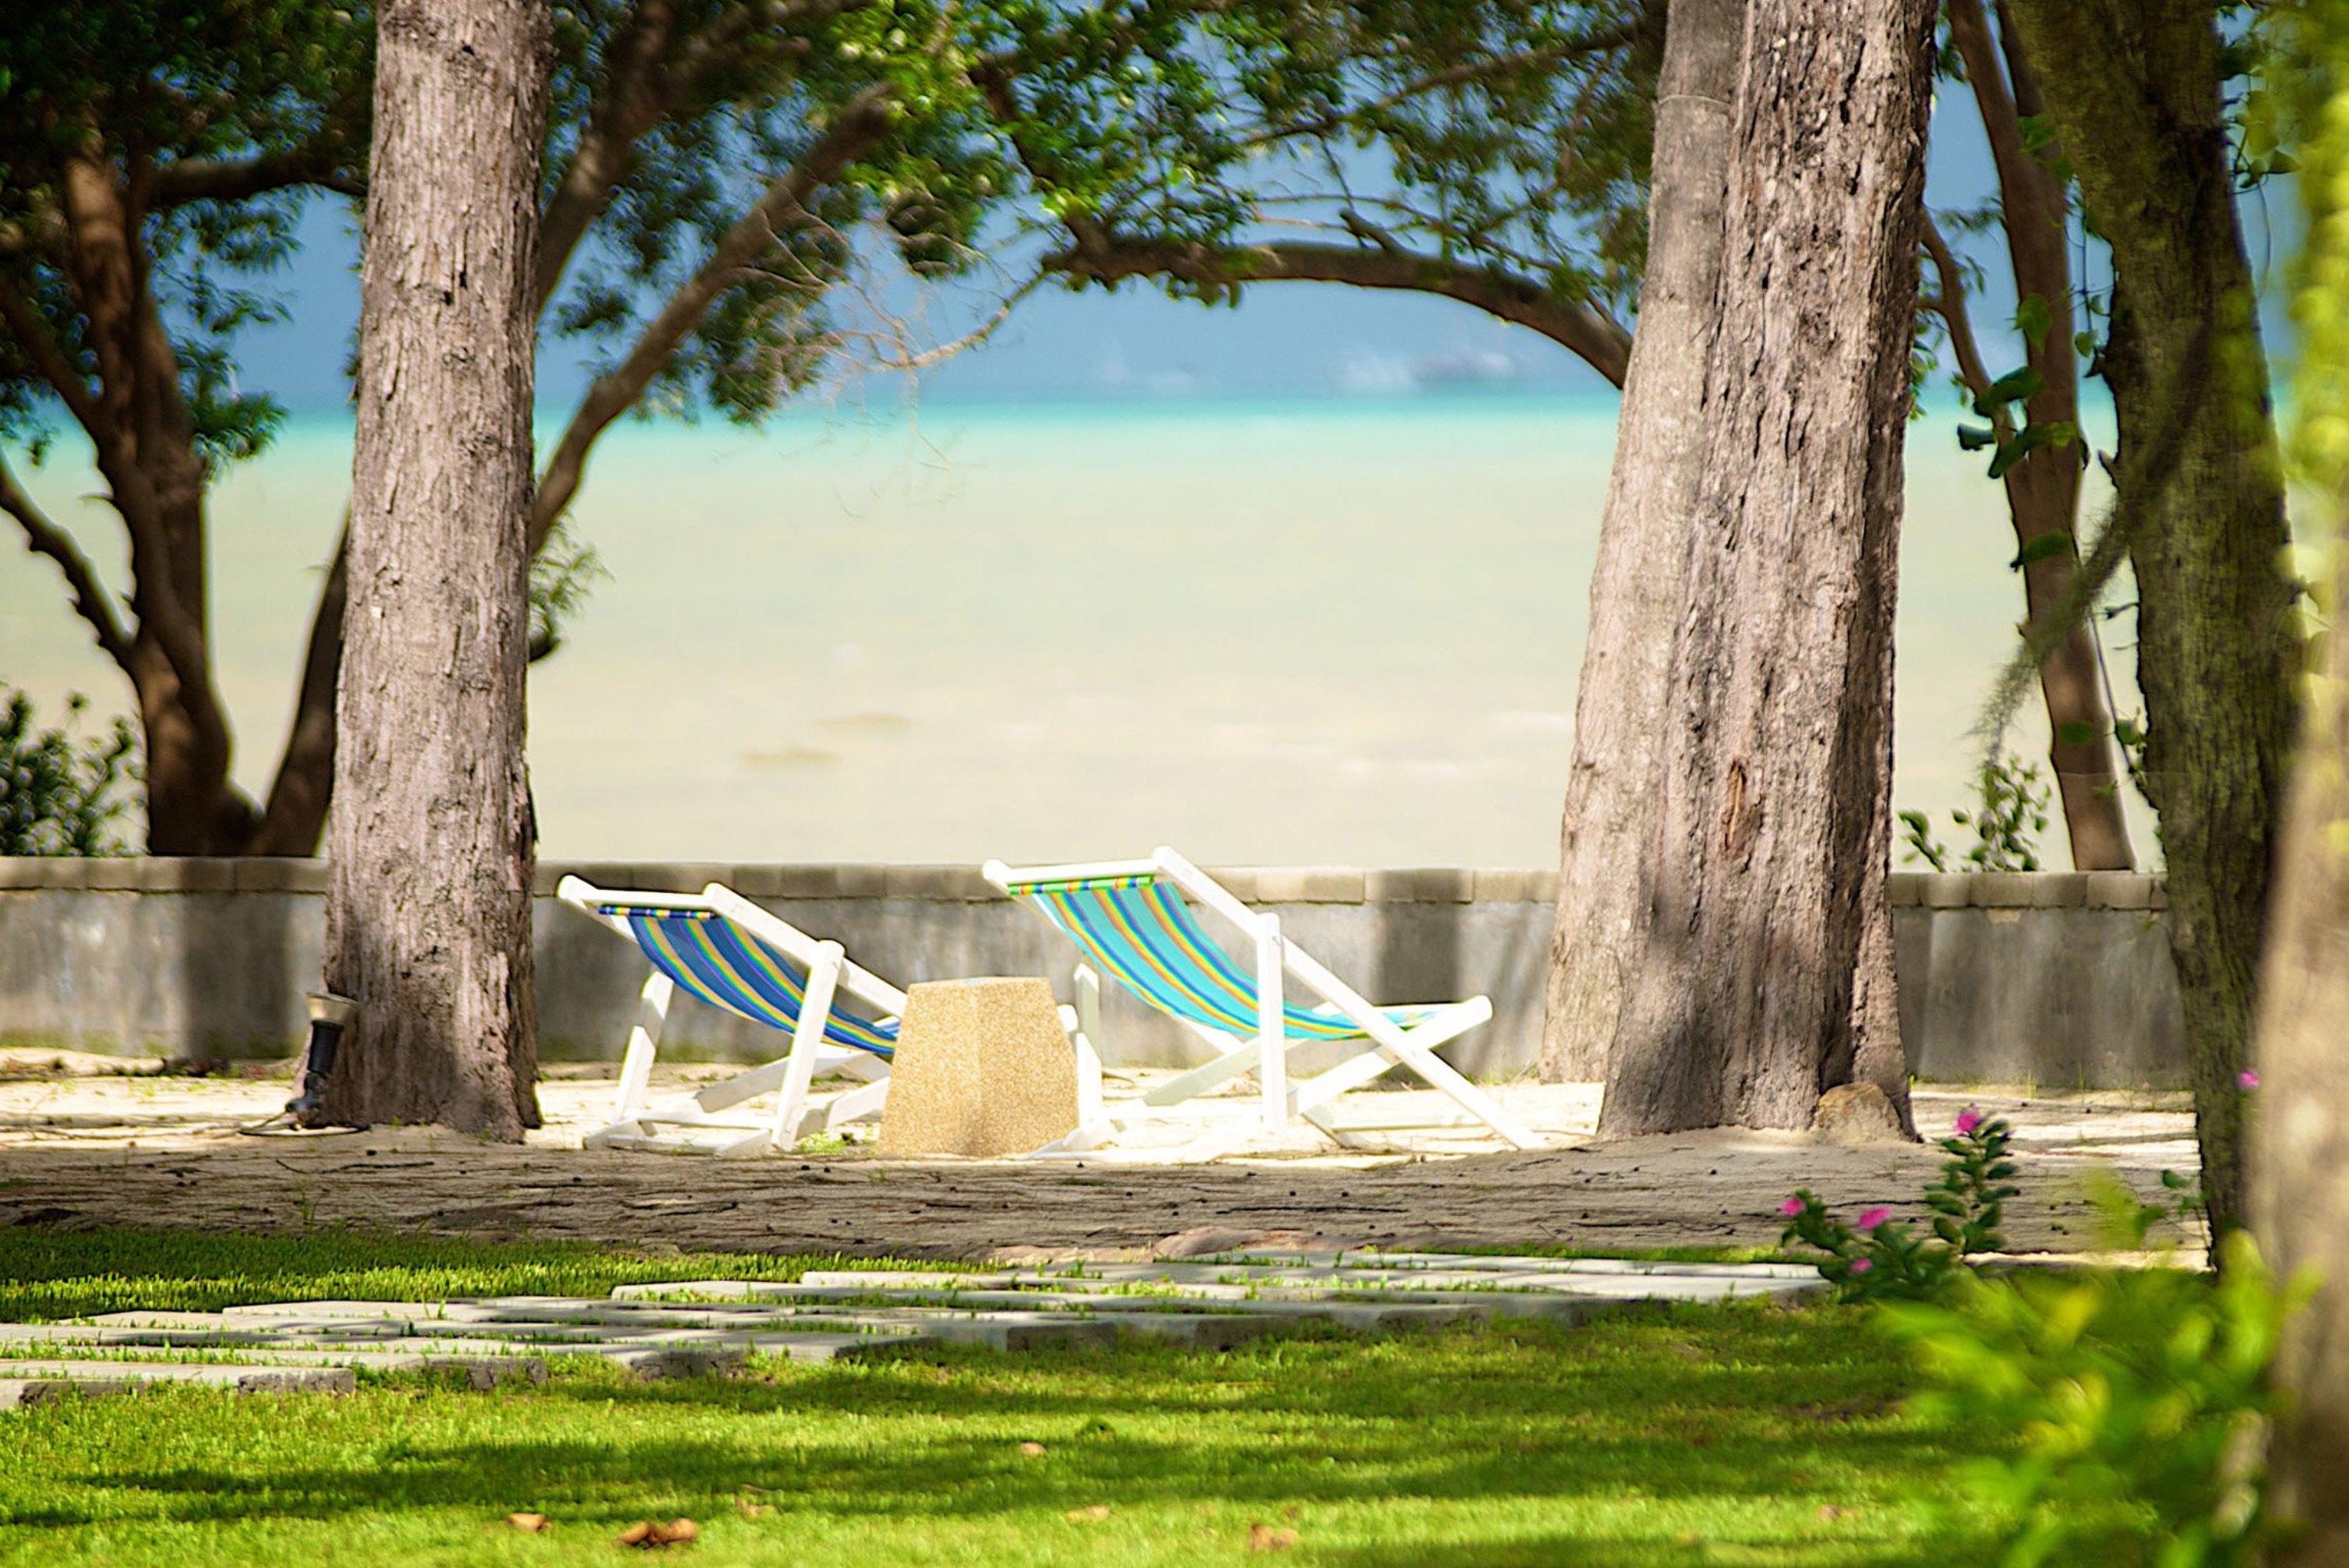 蓝猴红树林酒店【SHA Plus+】 攀瓦海滩 外观 照片